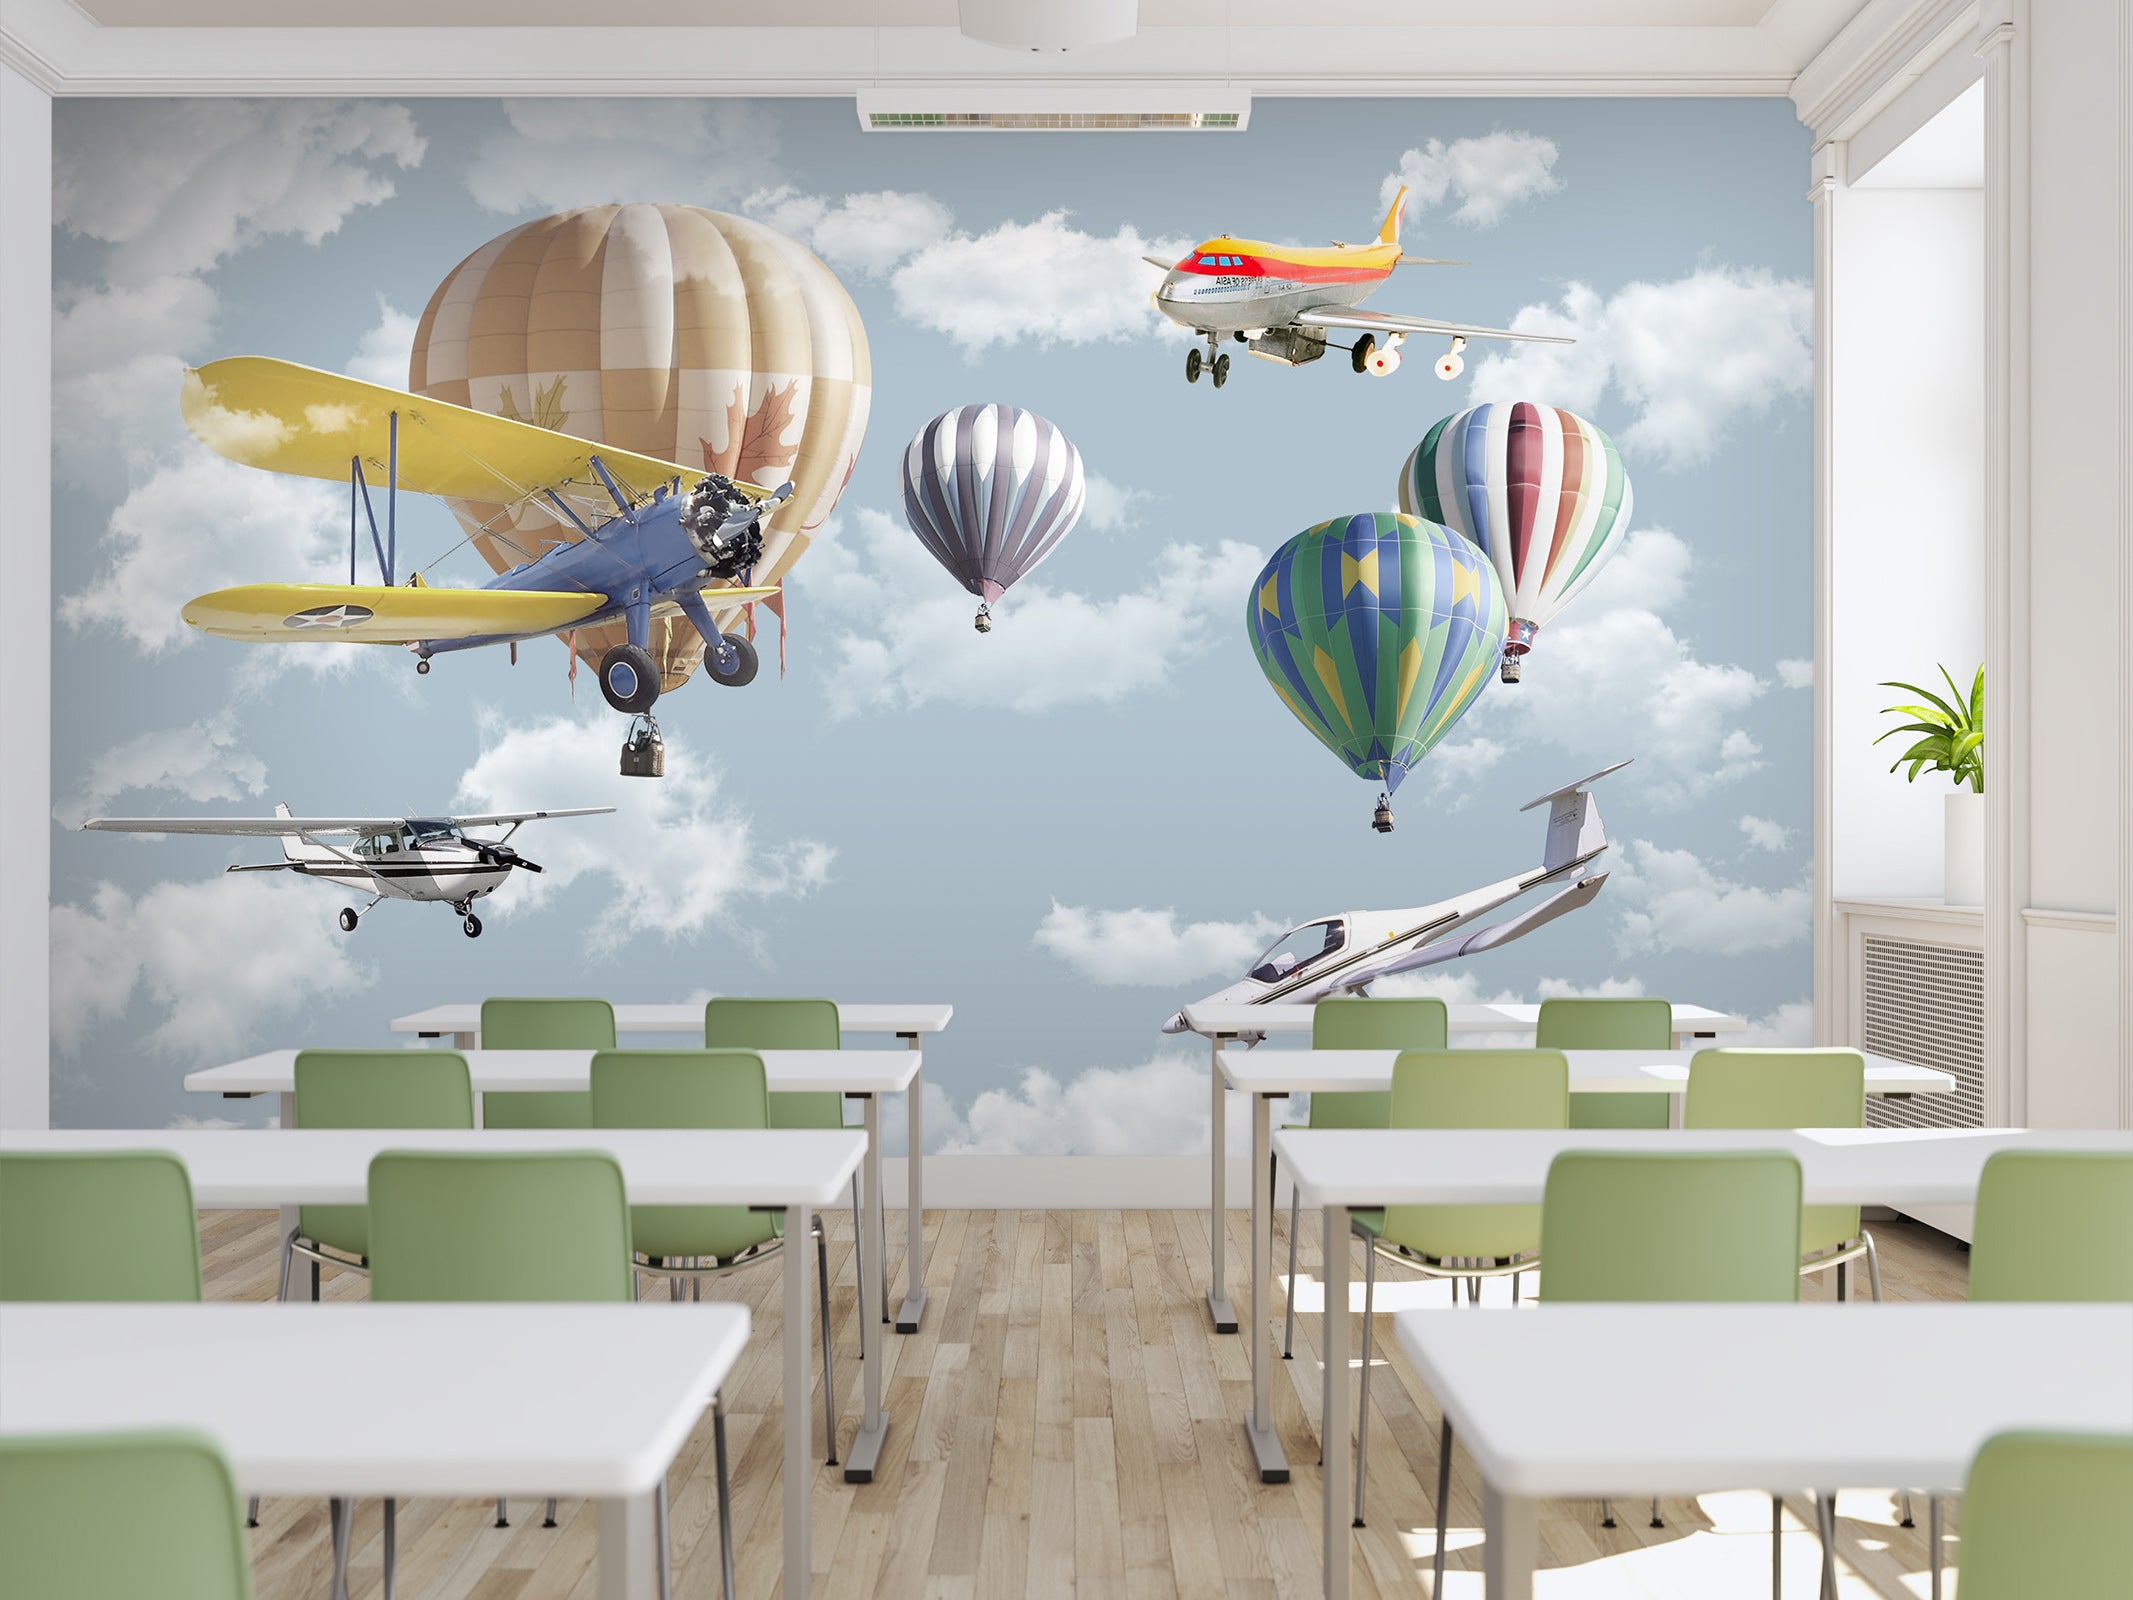 3D Hot Air Balloon 004 Wall Murals